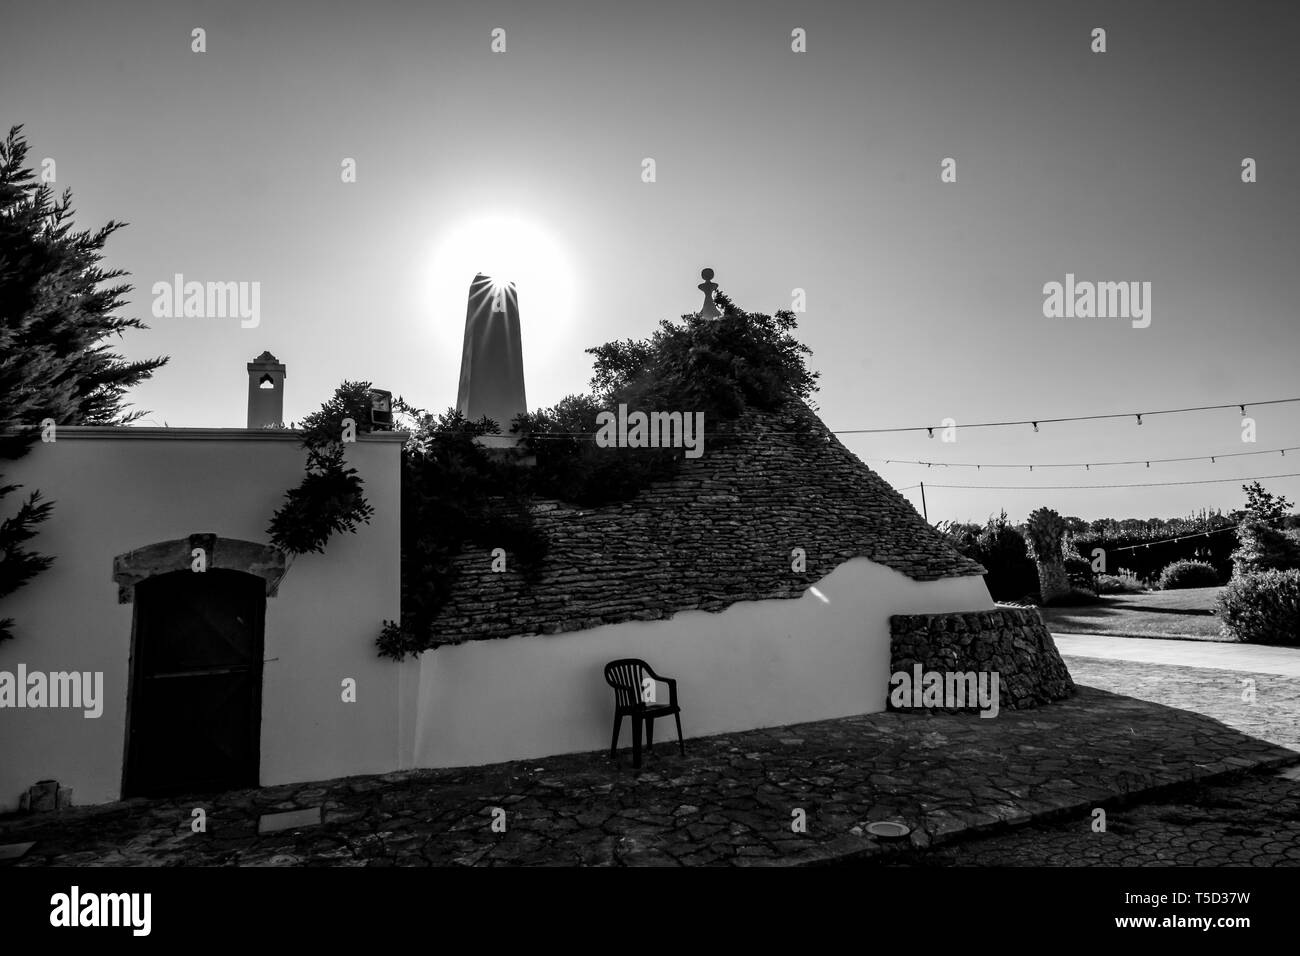 Stadtbild mit typischen herrliche Architektur der truli mit Kamin Lichtbeugung gegen die Sonne in der Region Apulien, in der Nähe von Alberobello, Süditalien. Warmen Sommermorgen, Schwarz und Weiß Stockfoto